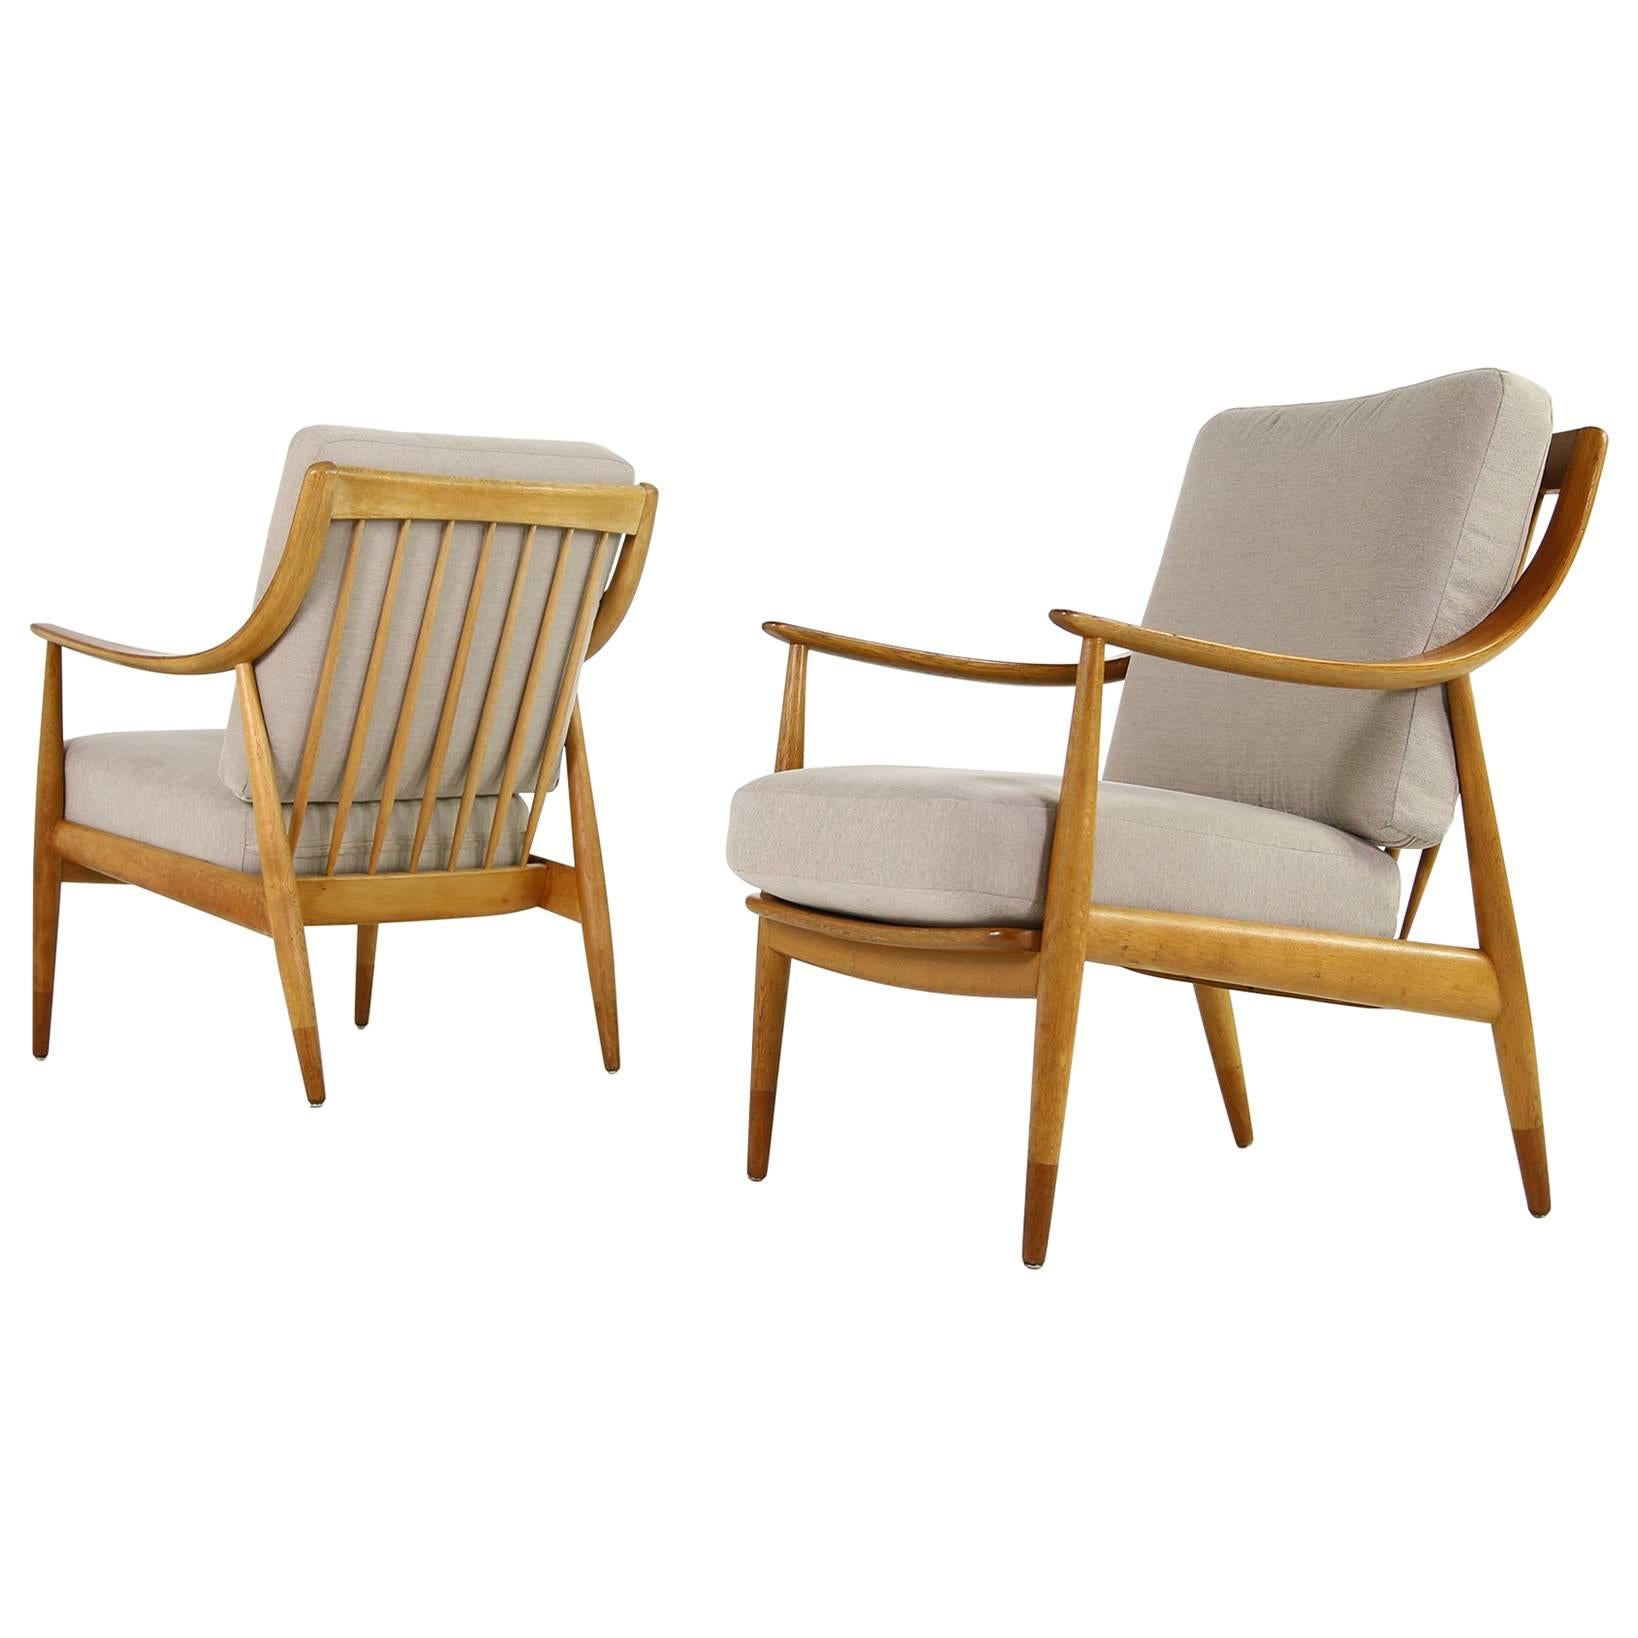 Pair of Danish Modern 1960s Oak Easy Chairs by Peter Hvidt Mod, FD 146 Teak